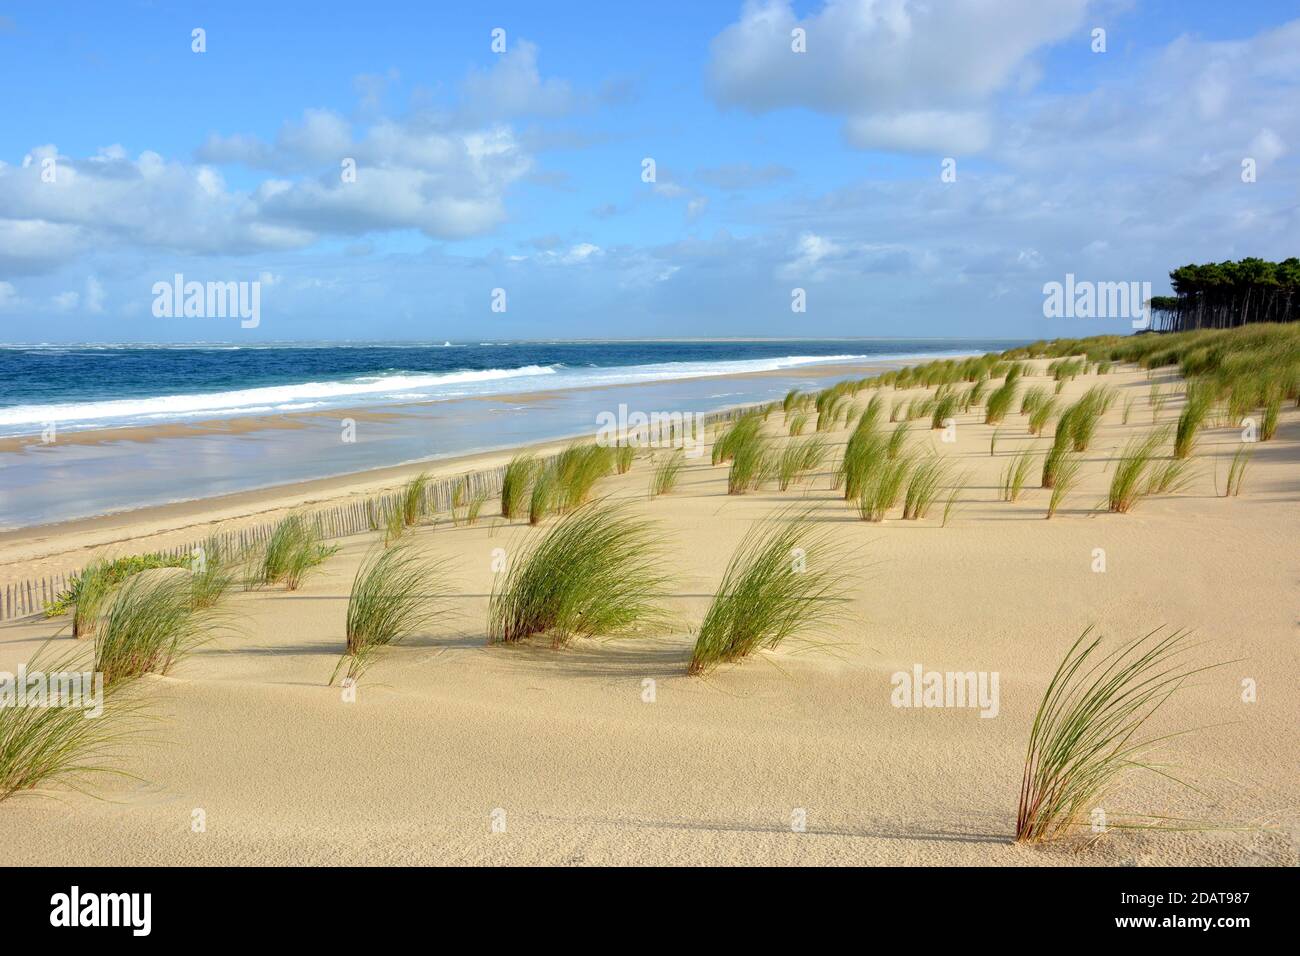 Francia, aquitania, la costa atlantica ha formato un'immensa spiaggia sabbiosa fiancheggiata da dune e onde che permettono il surf, qui la spiaggia di lagune . Foto Stock